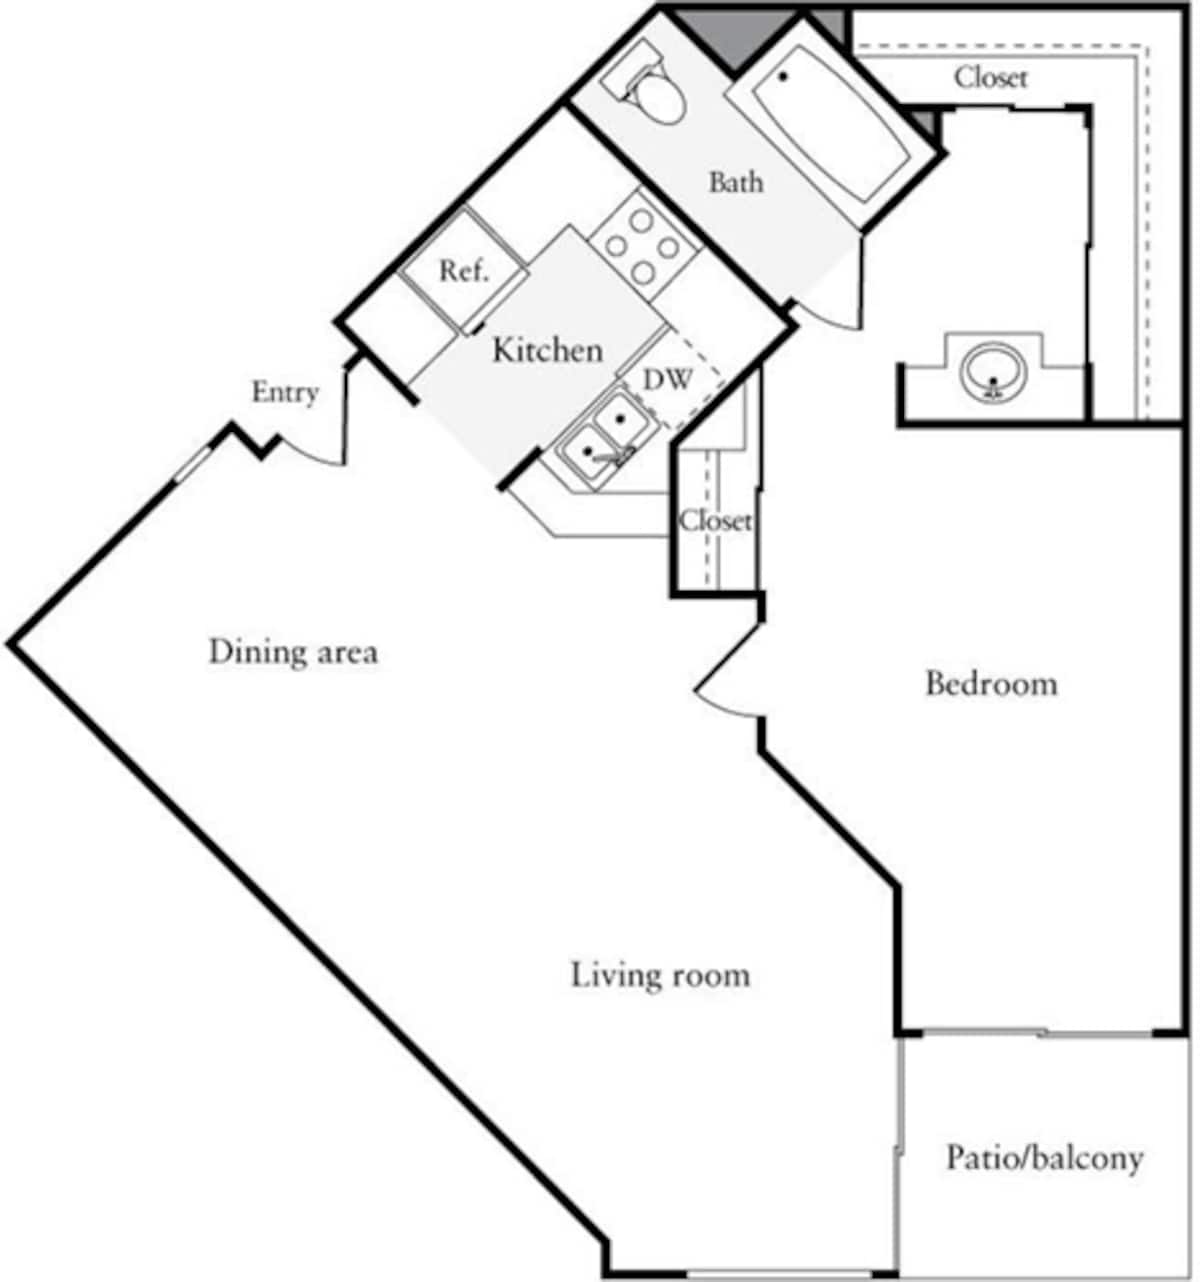 Floorplan diagram for 1 Bedroom C, showing 1 bedroom